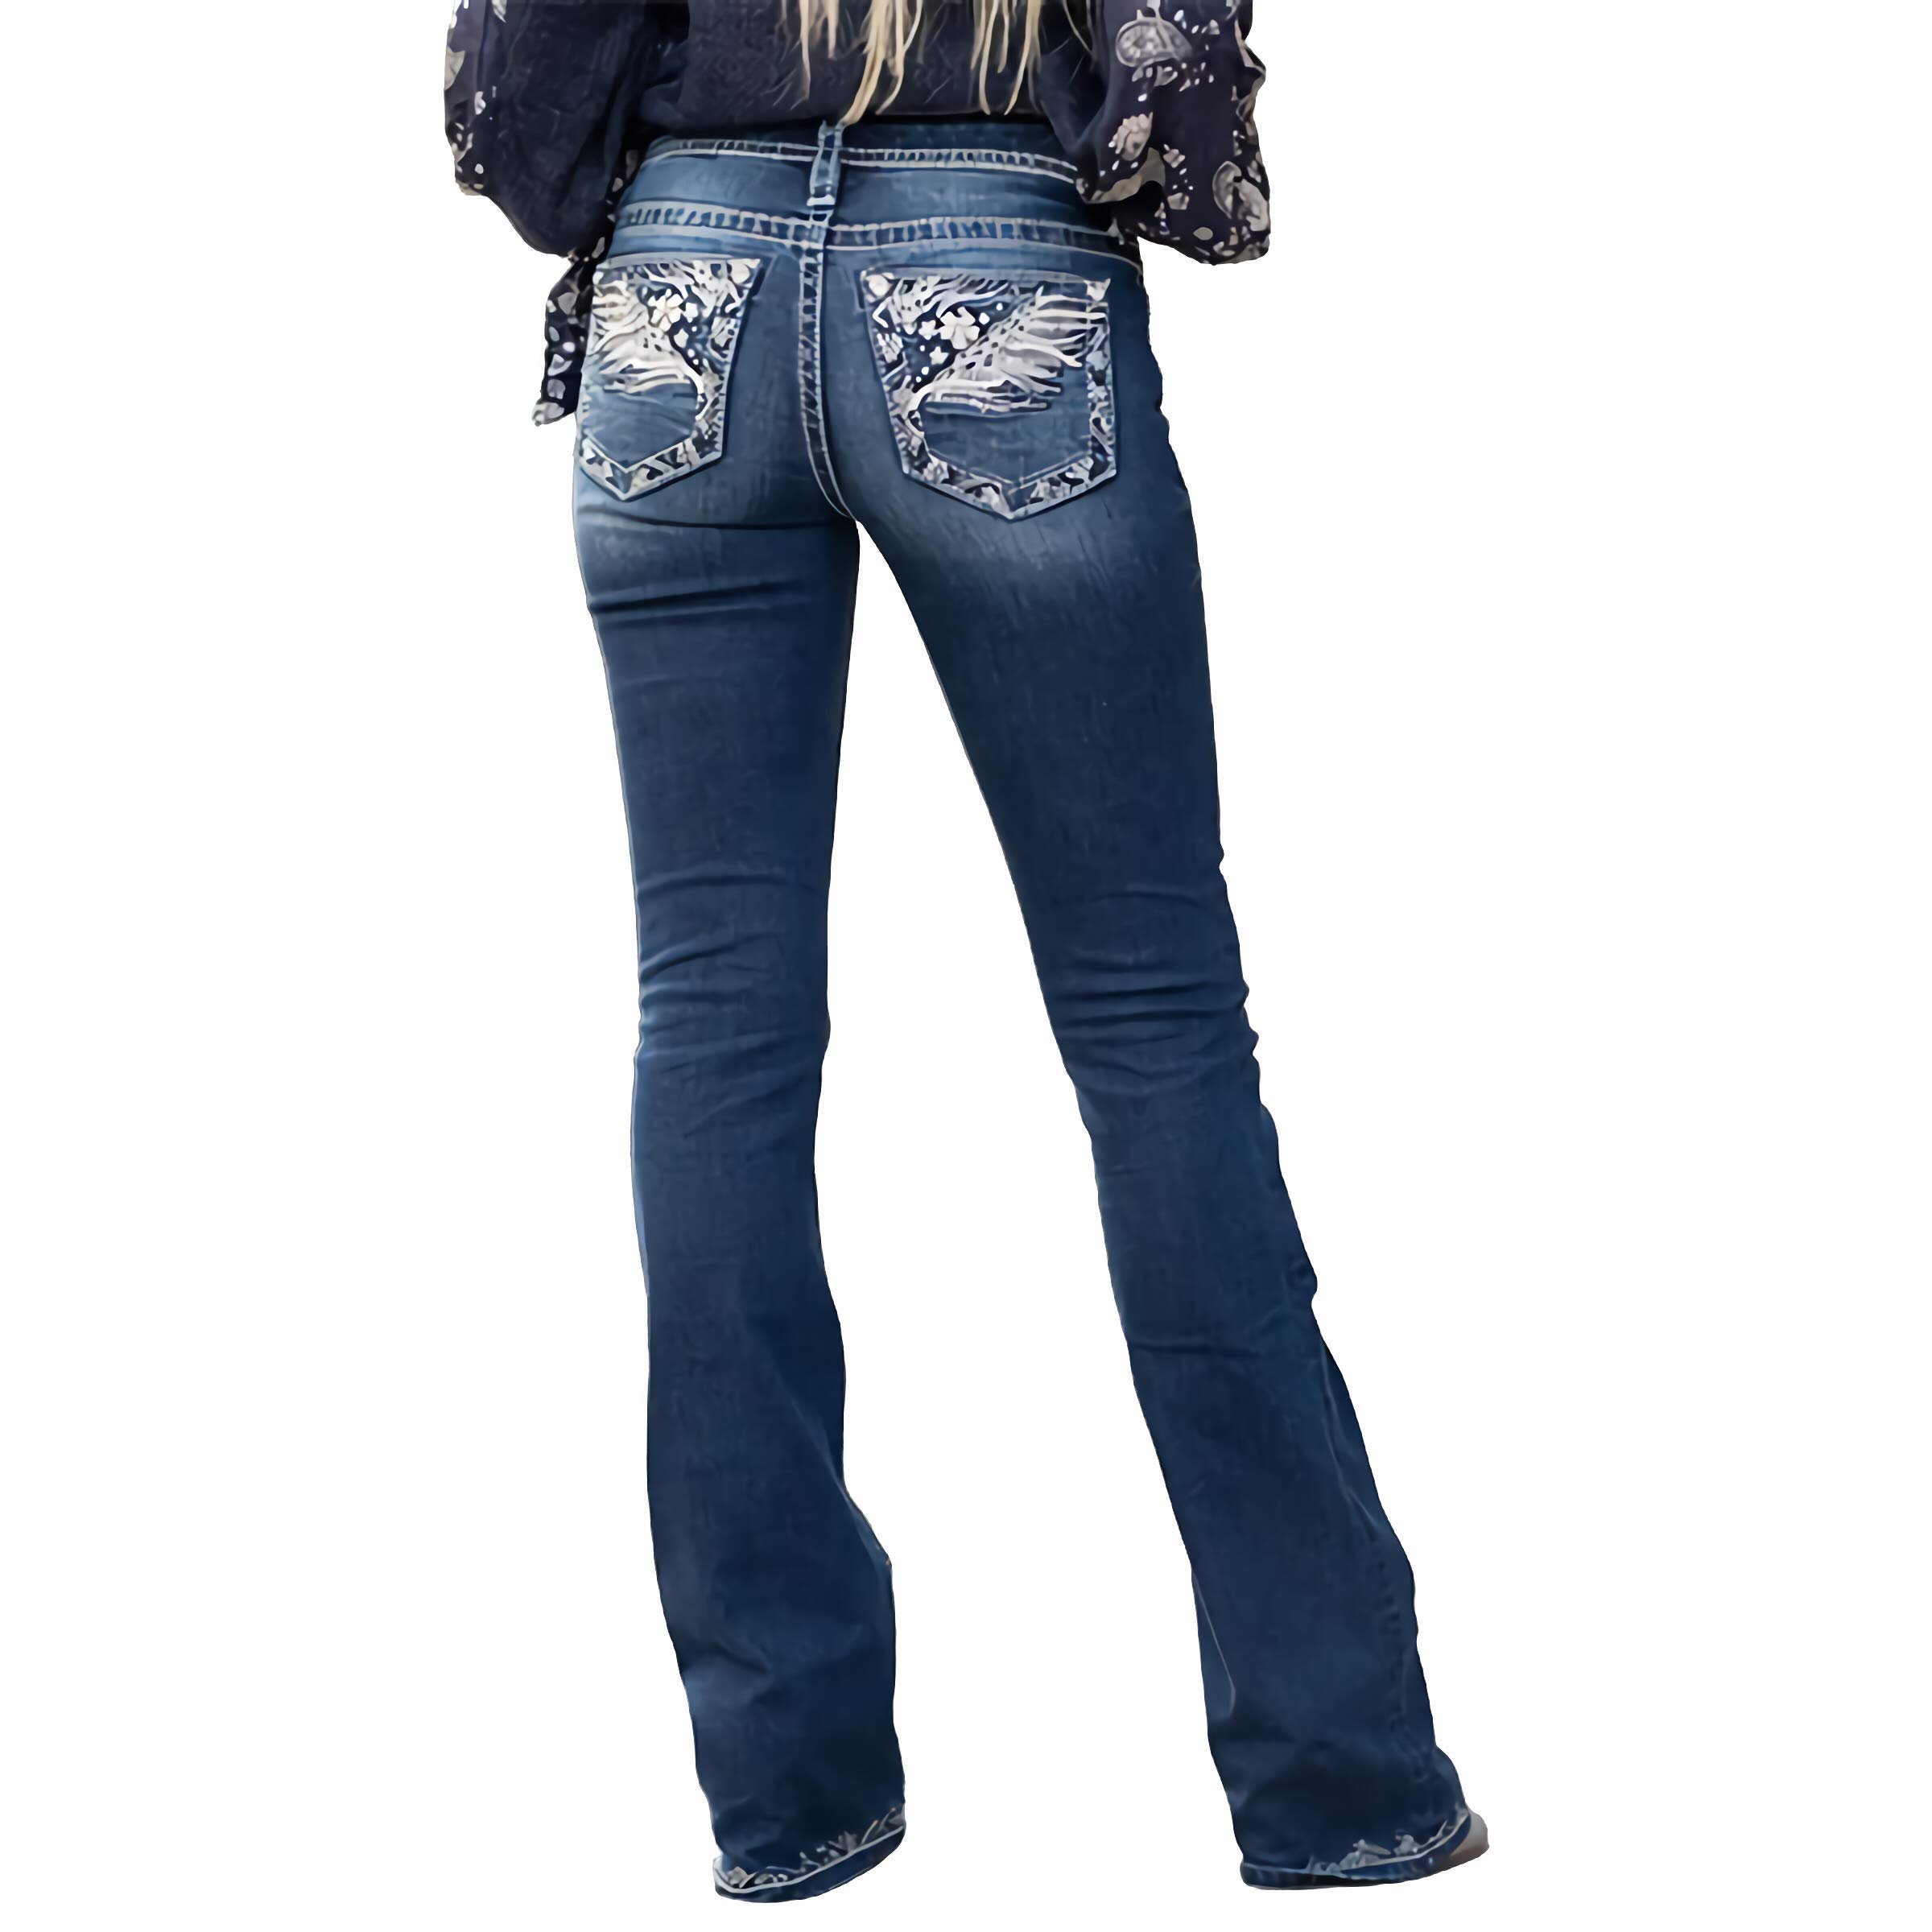 X-xyA Frauen Jeans Feder Blume Stickerei Mid Rise Dehnbare Bootcut Slim Wide Beinhose,Blau,S